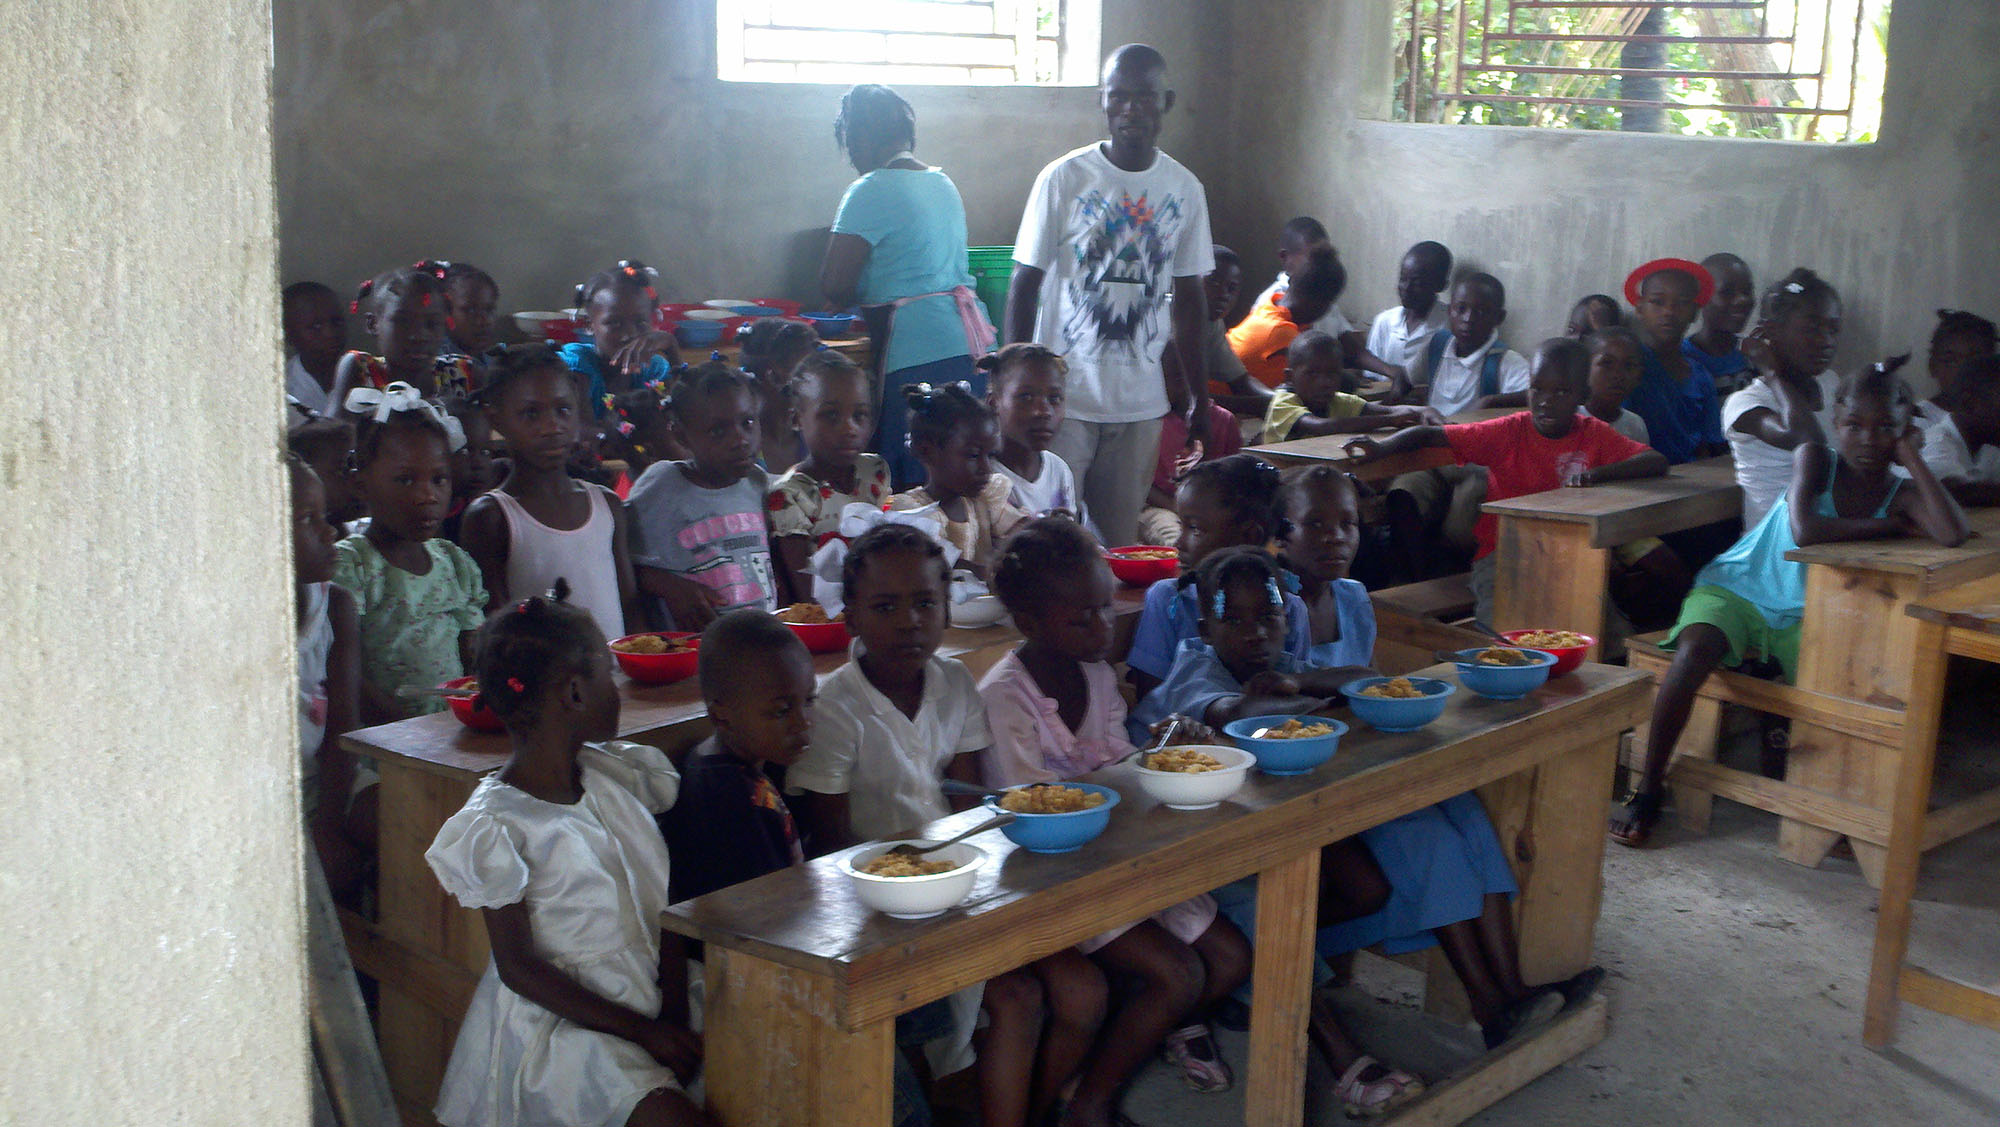 Haiti School Children